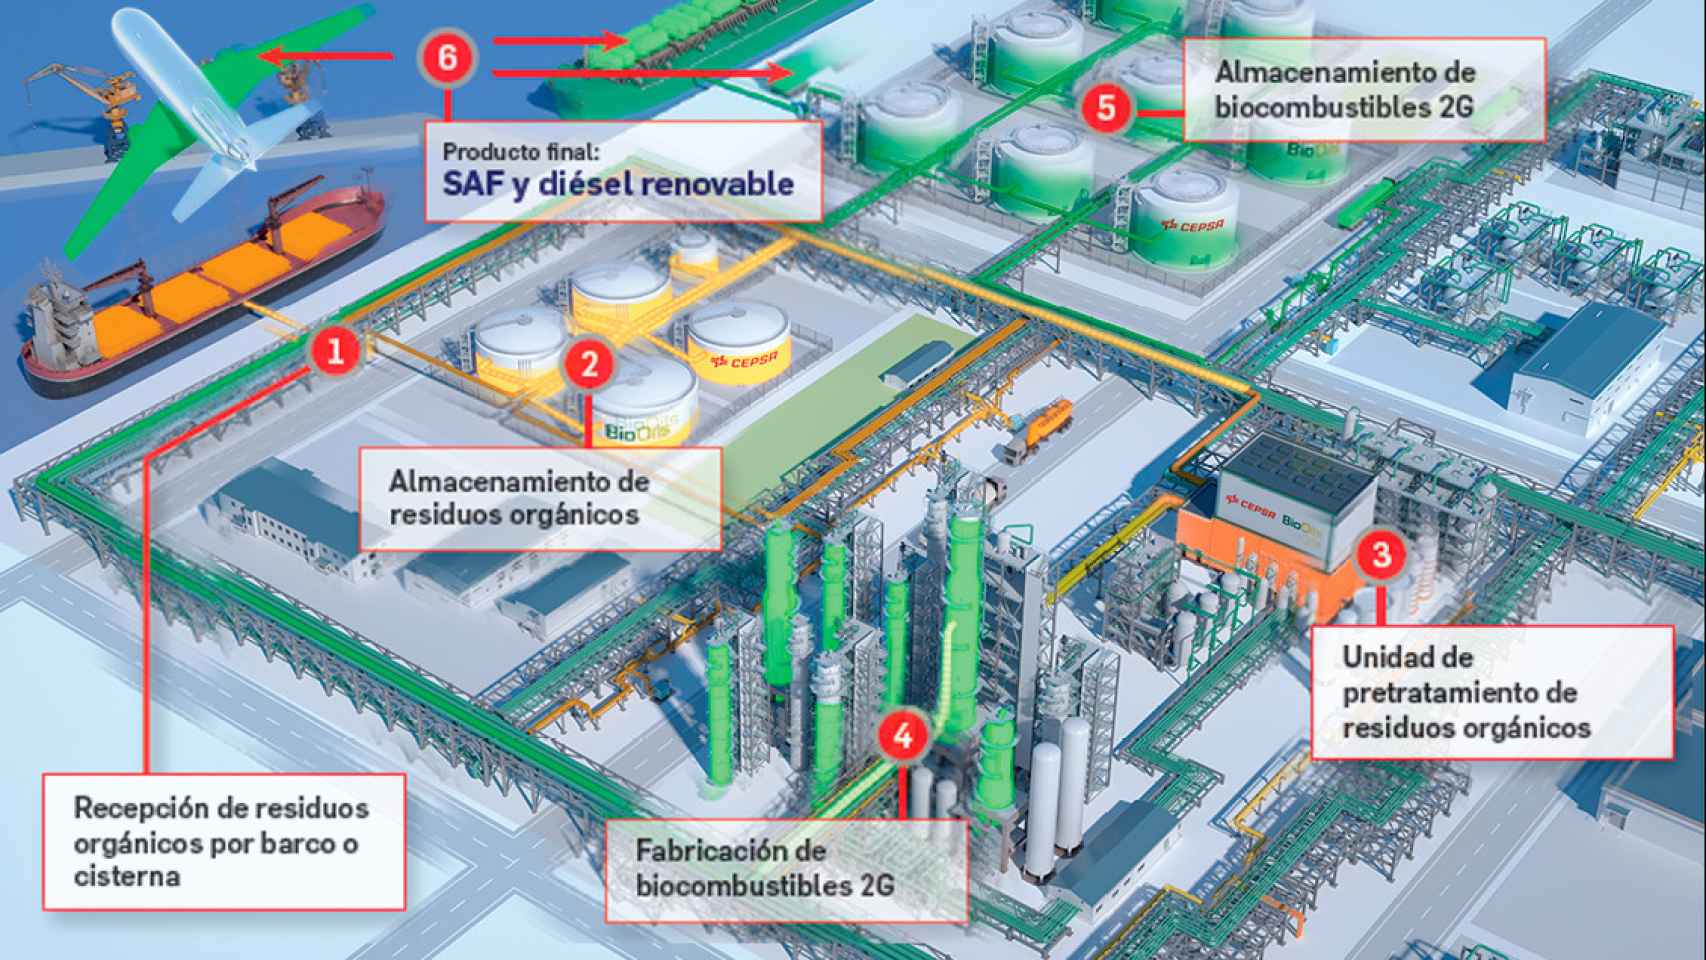 Diagrama del proceso de producción de biocombustibles. Imagen: Cepsa